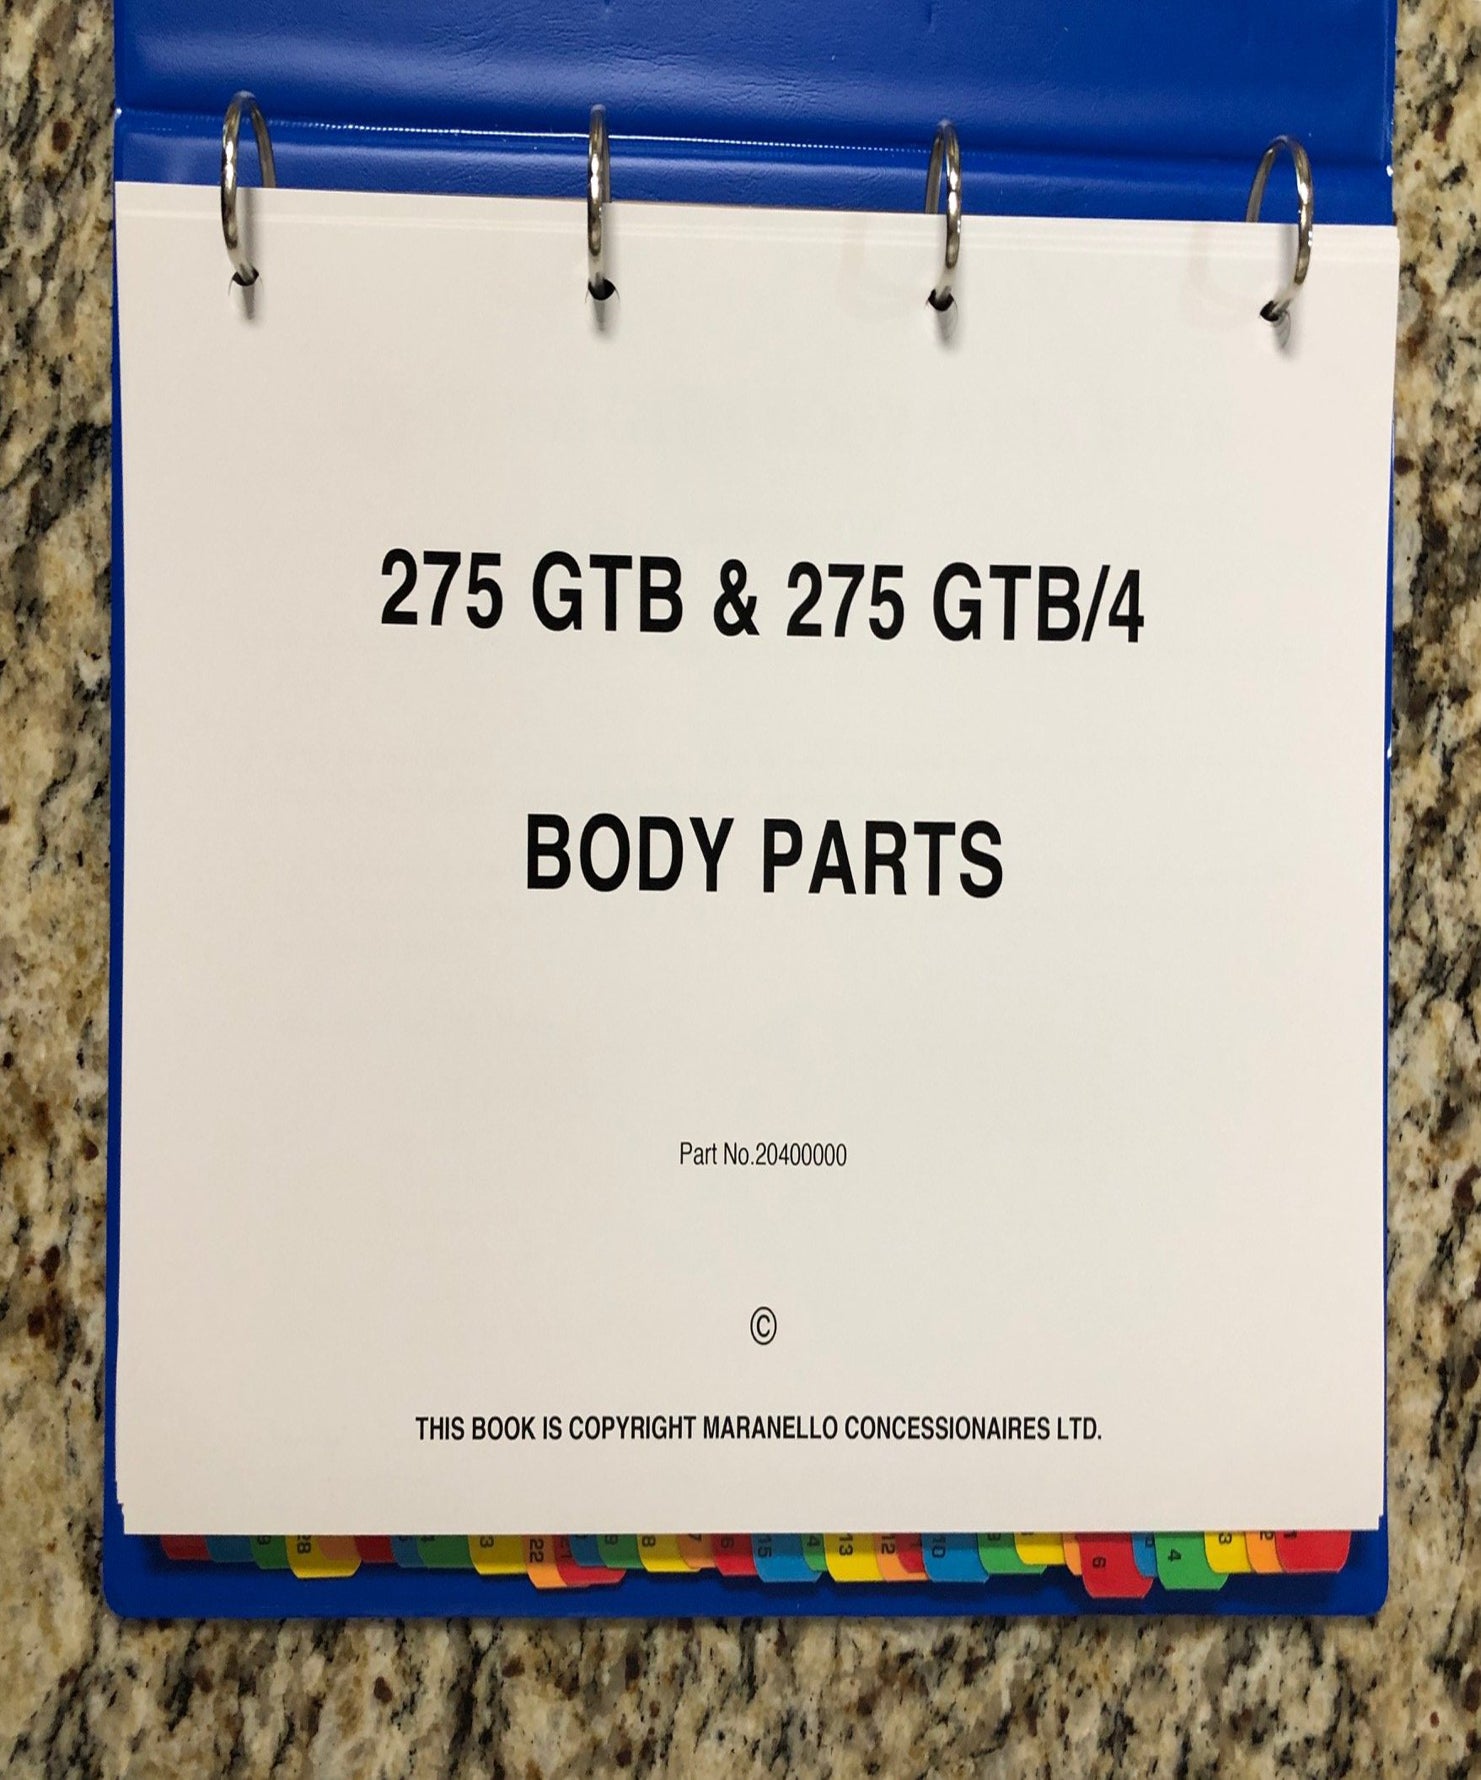 Ferrari 275 GTB & GTB/4 Body Parts Manual 1965